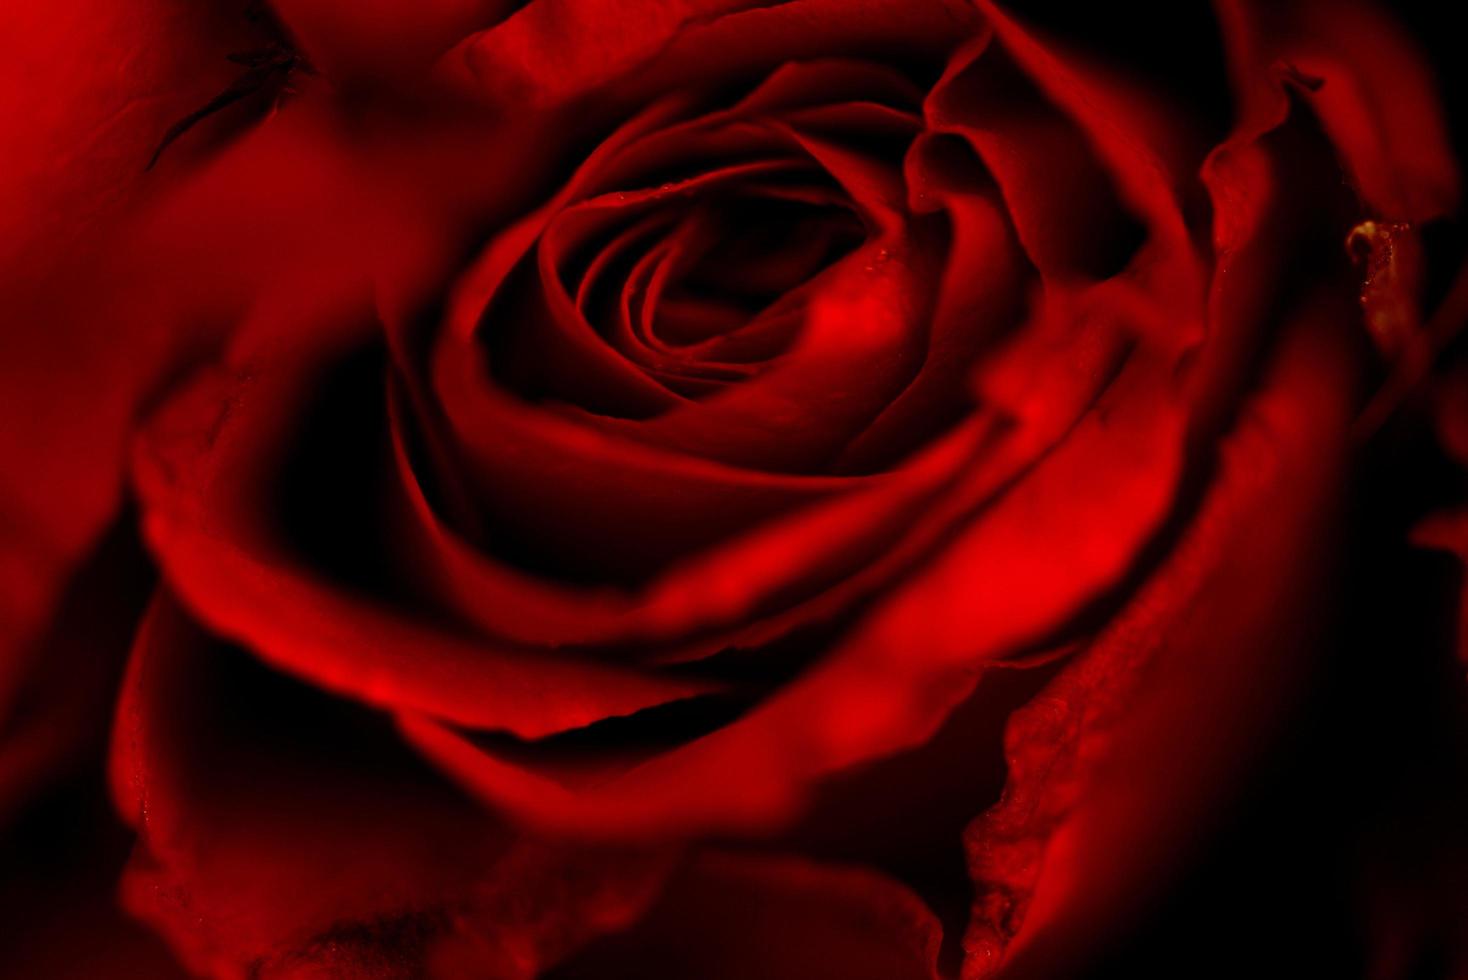 close-up verse natuurlijke roos achtergrond bloemen romantische liefde valentijn dag concept - rode rozen bloemboeket op donkere achtergrond foto